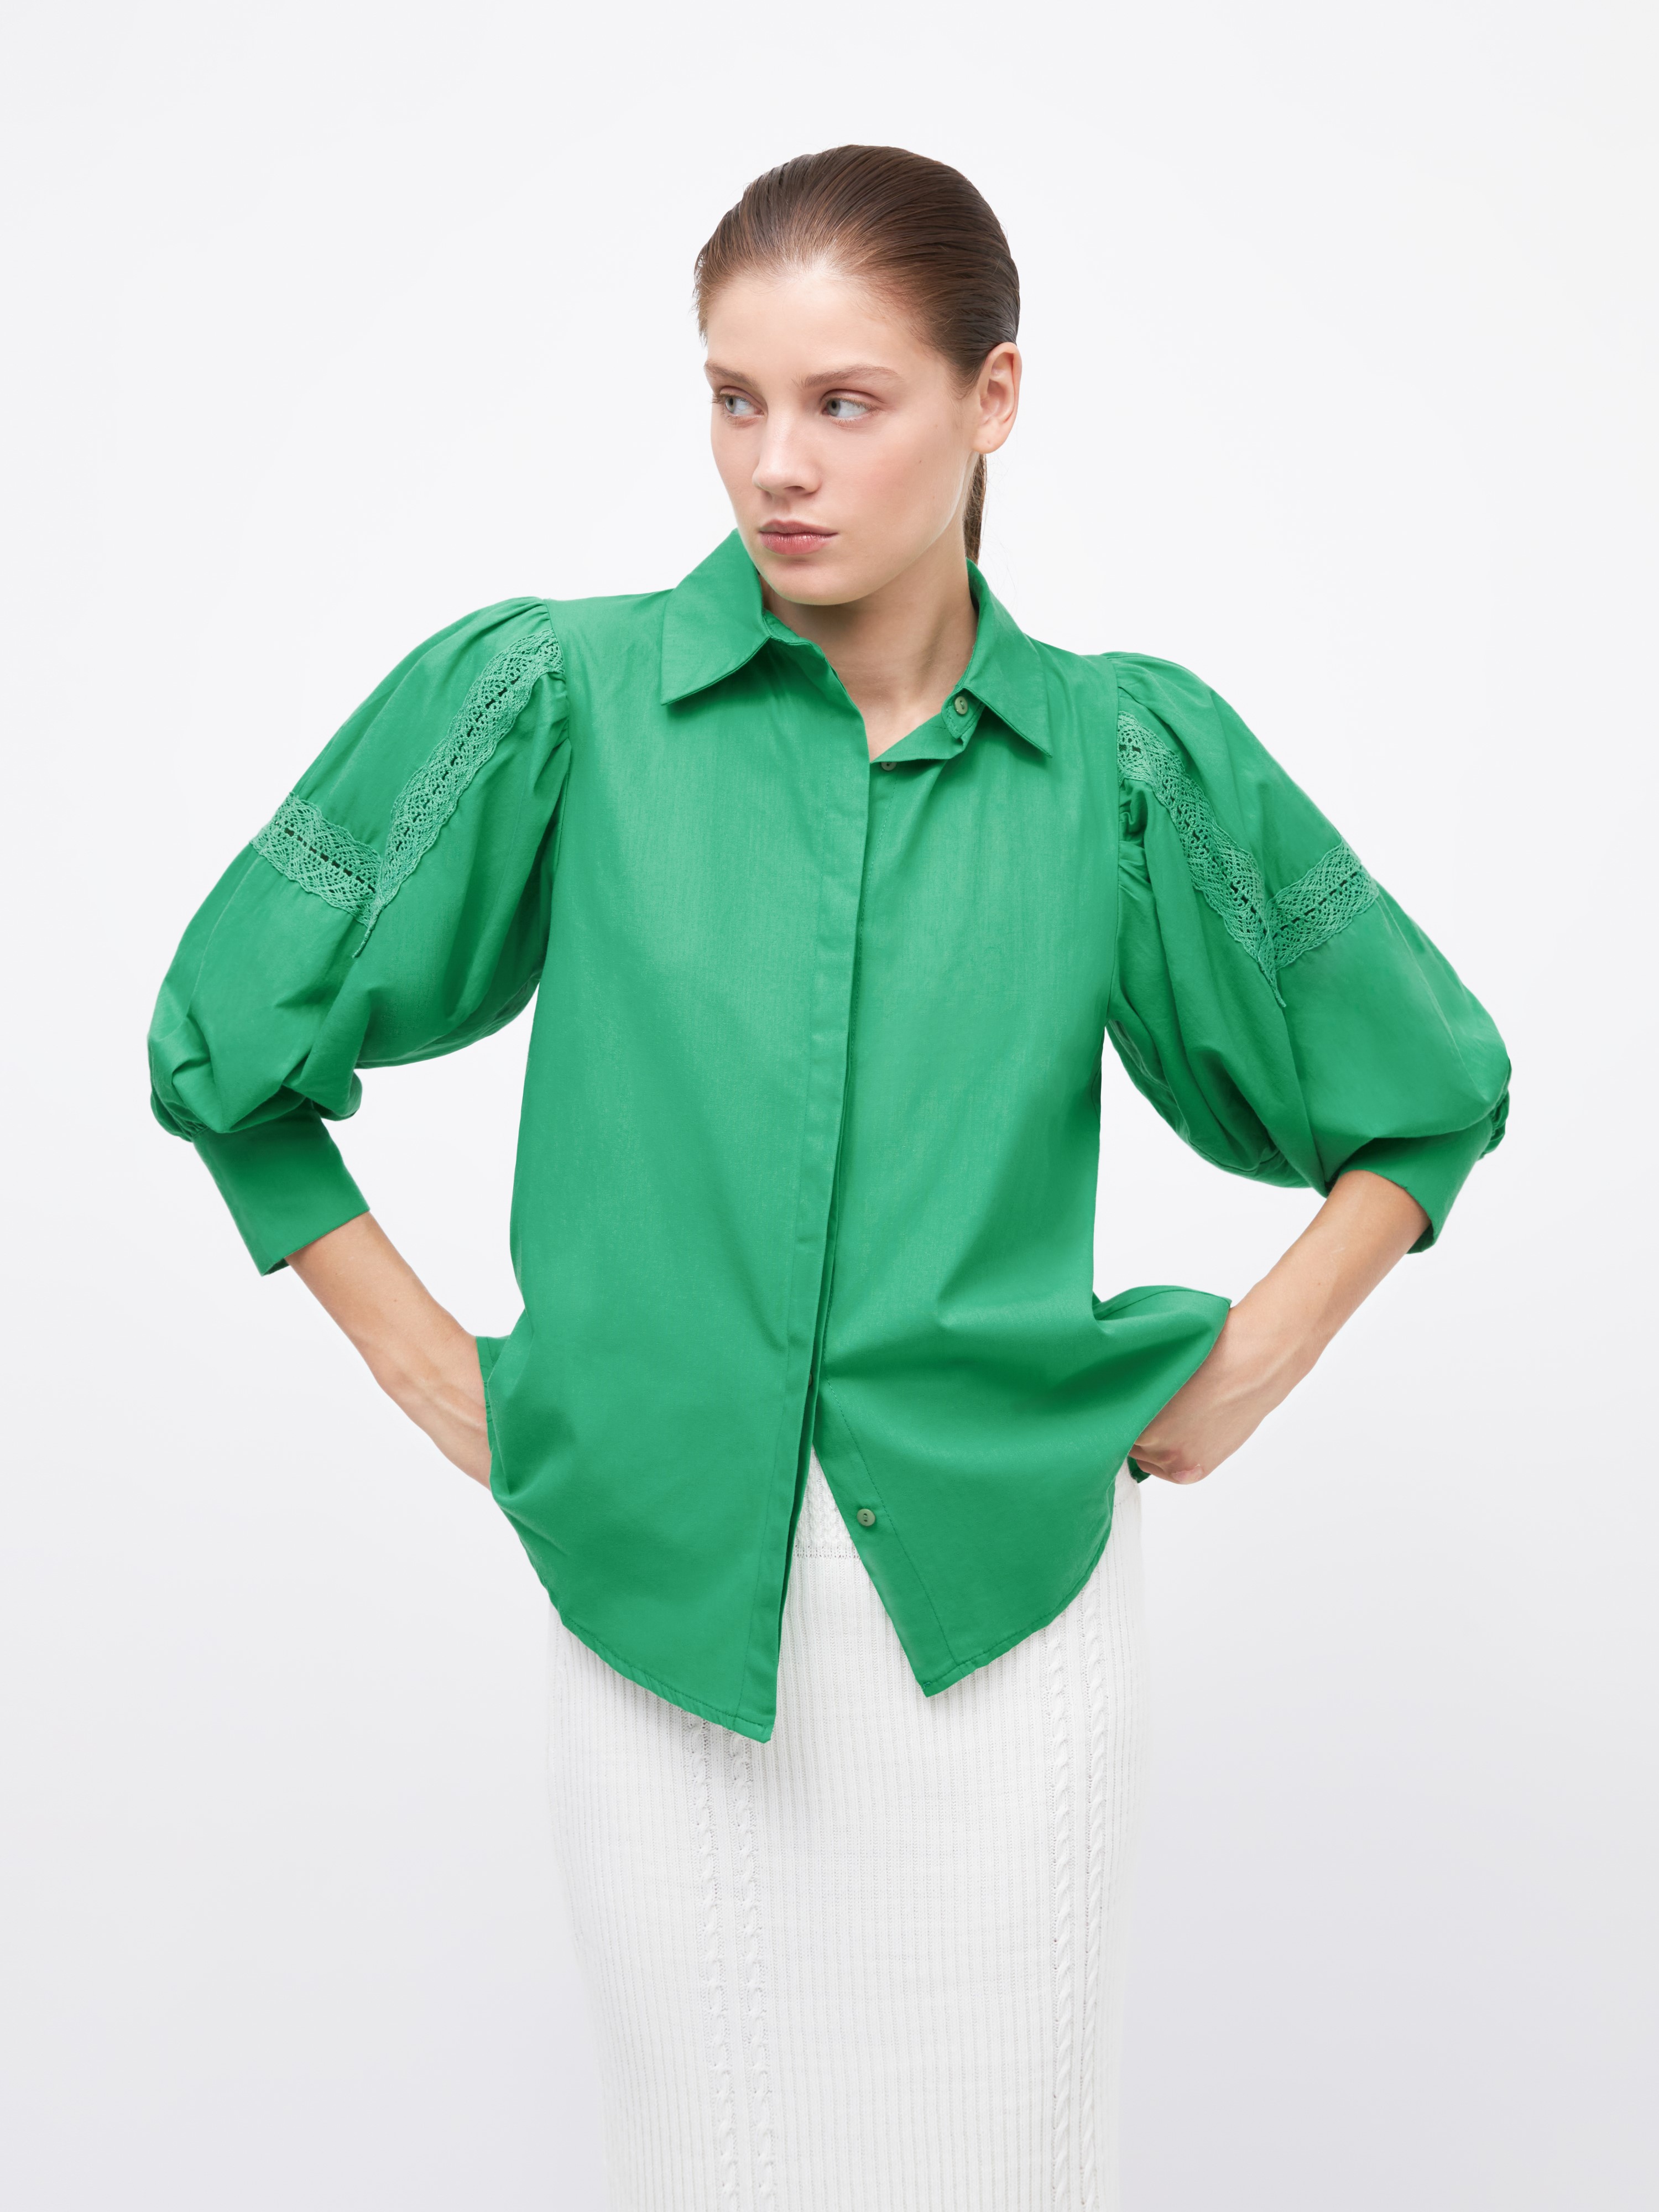 Рубашка женская Arive ARV-WS-10521-006 зелёная, размер M